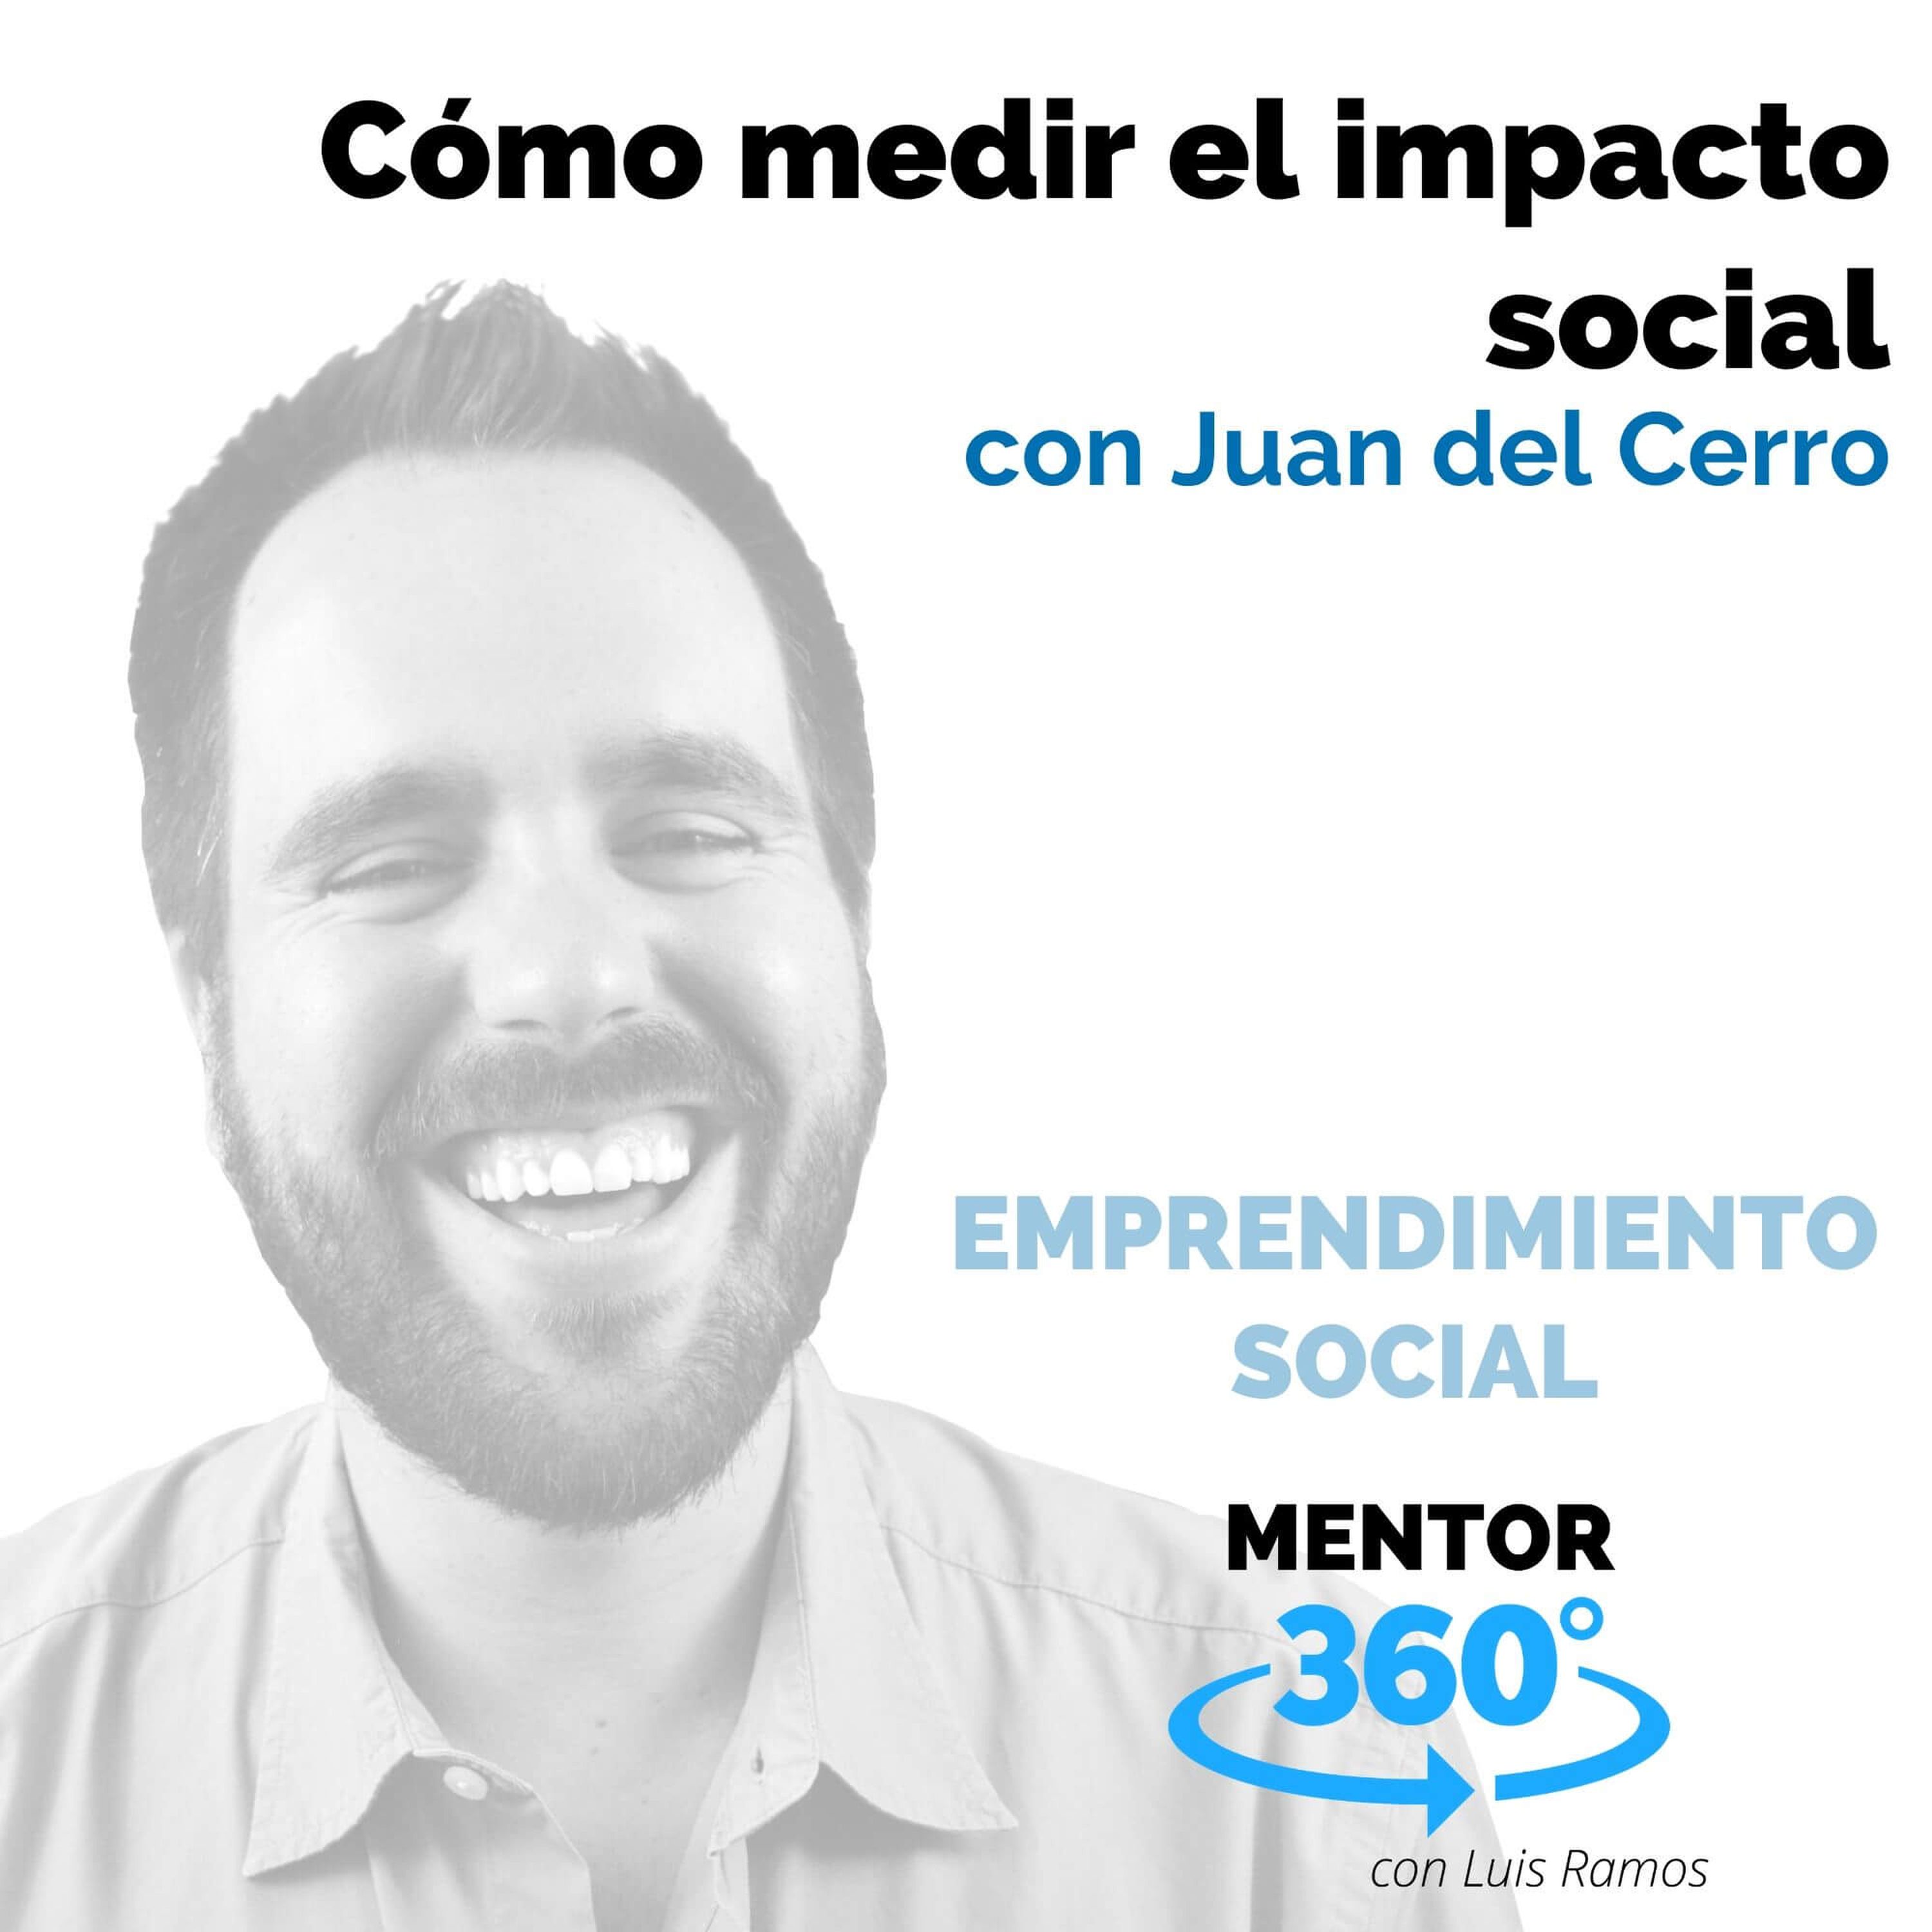 Cómo medir el impacto social, con Juan del Cerro - EMPRENDIMIENTO SOCIAL